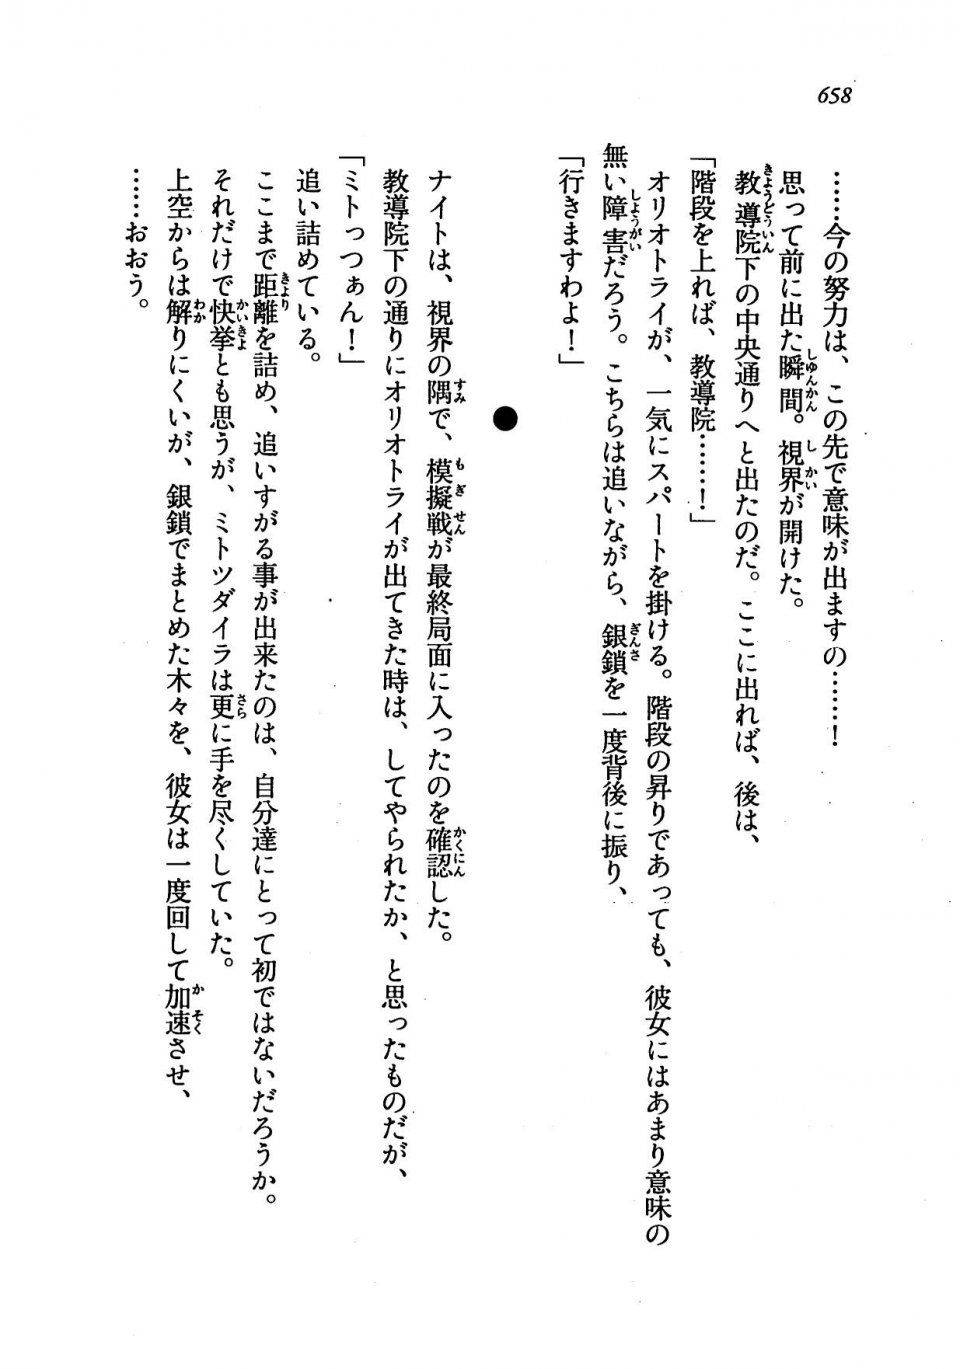 Kyoukai Senjou no Horizon LN Vol 19(8A) - Photo #658